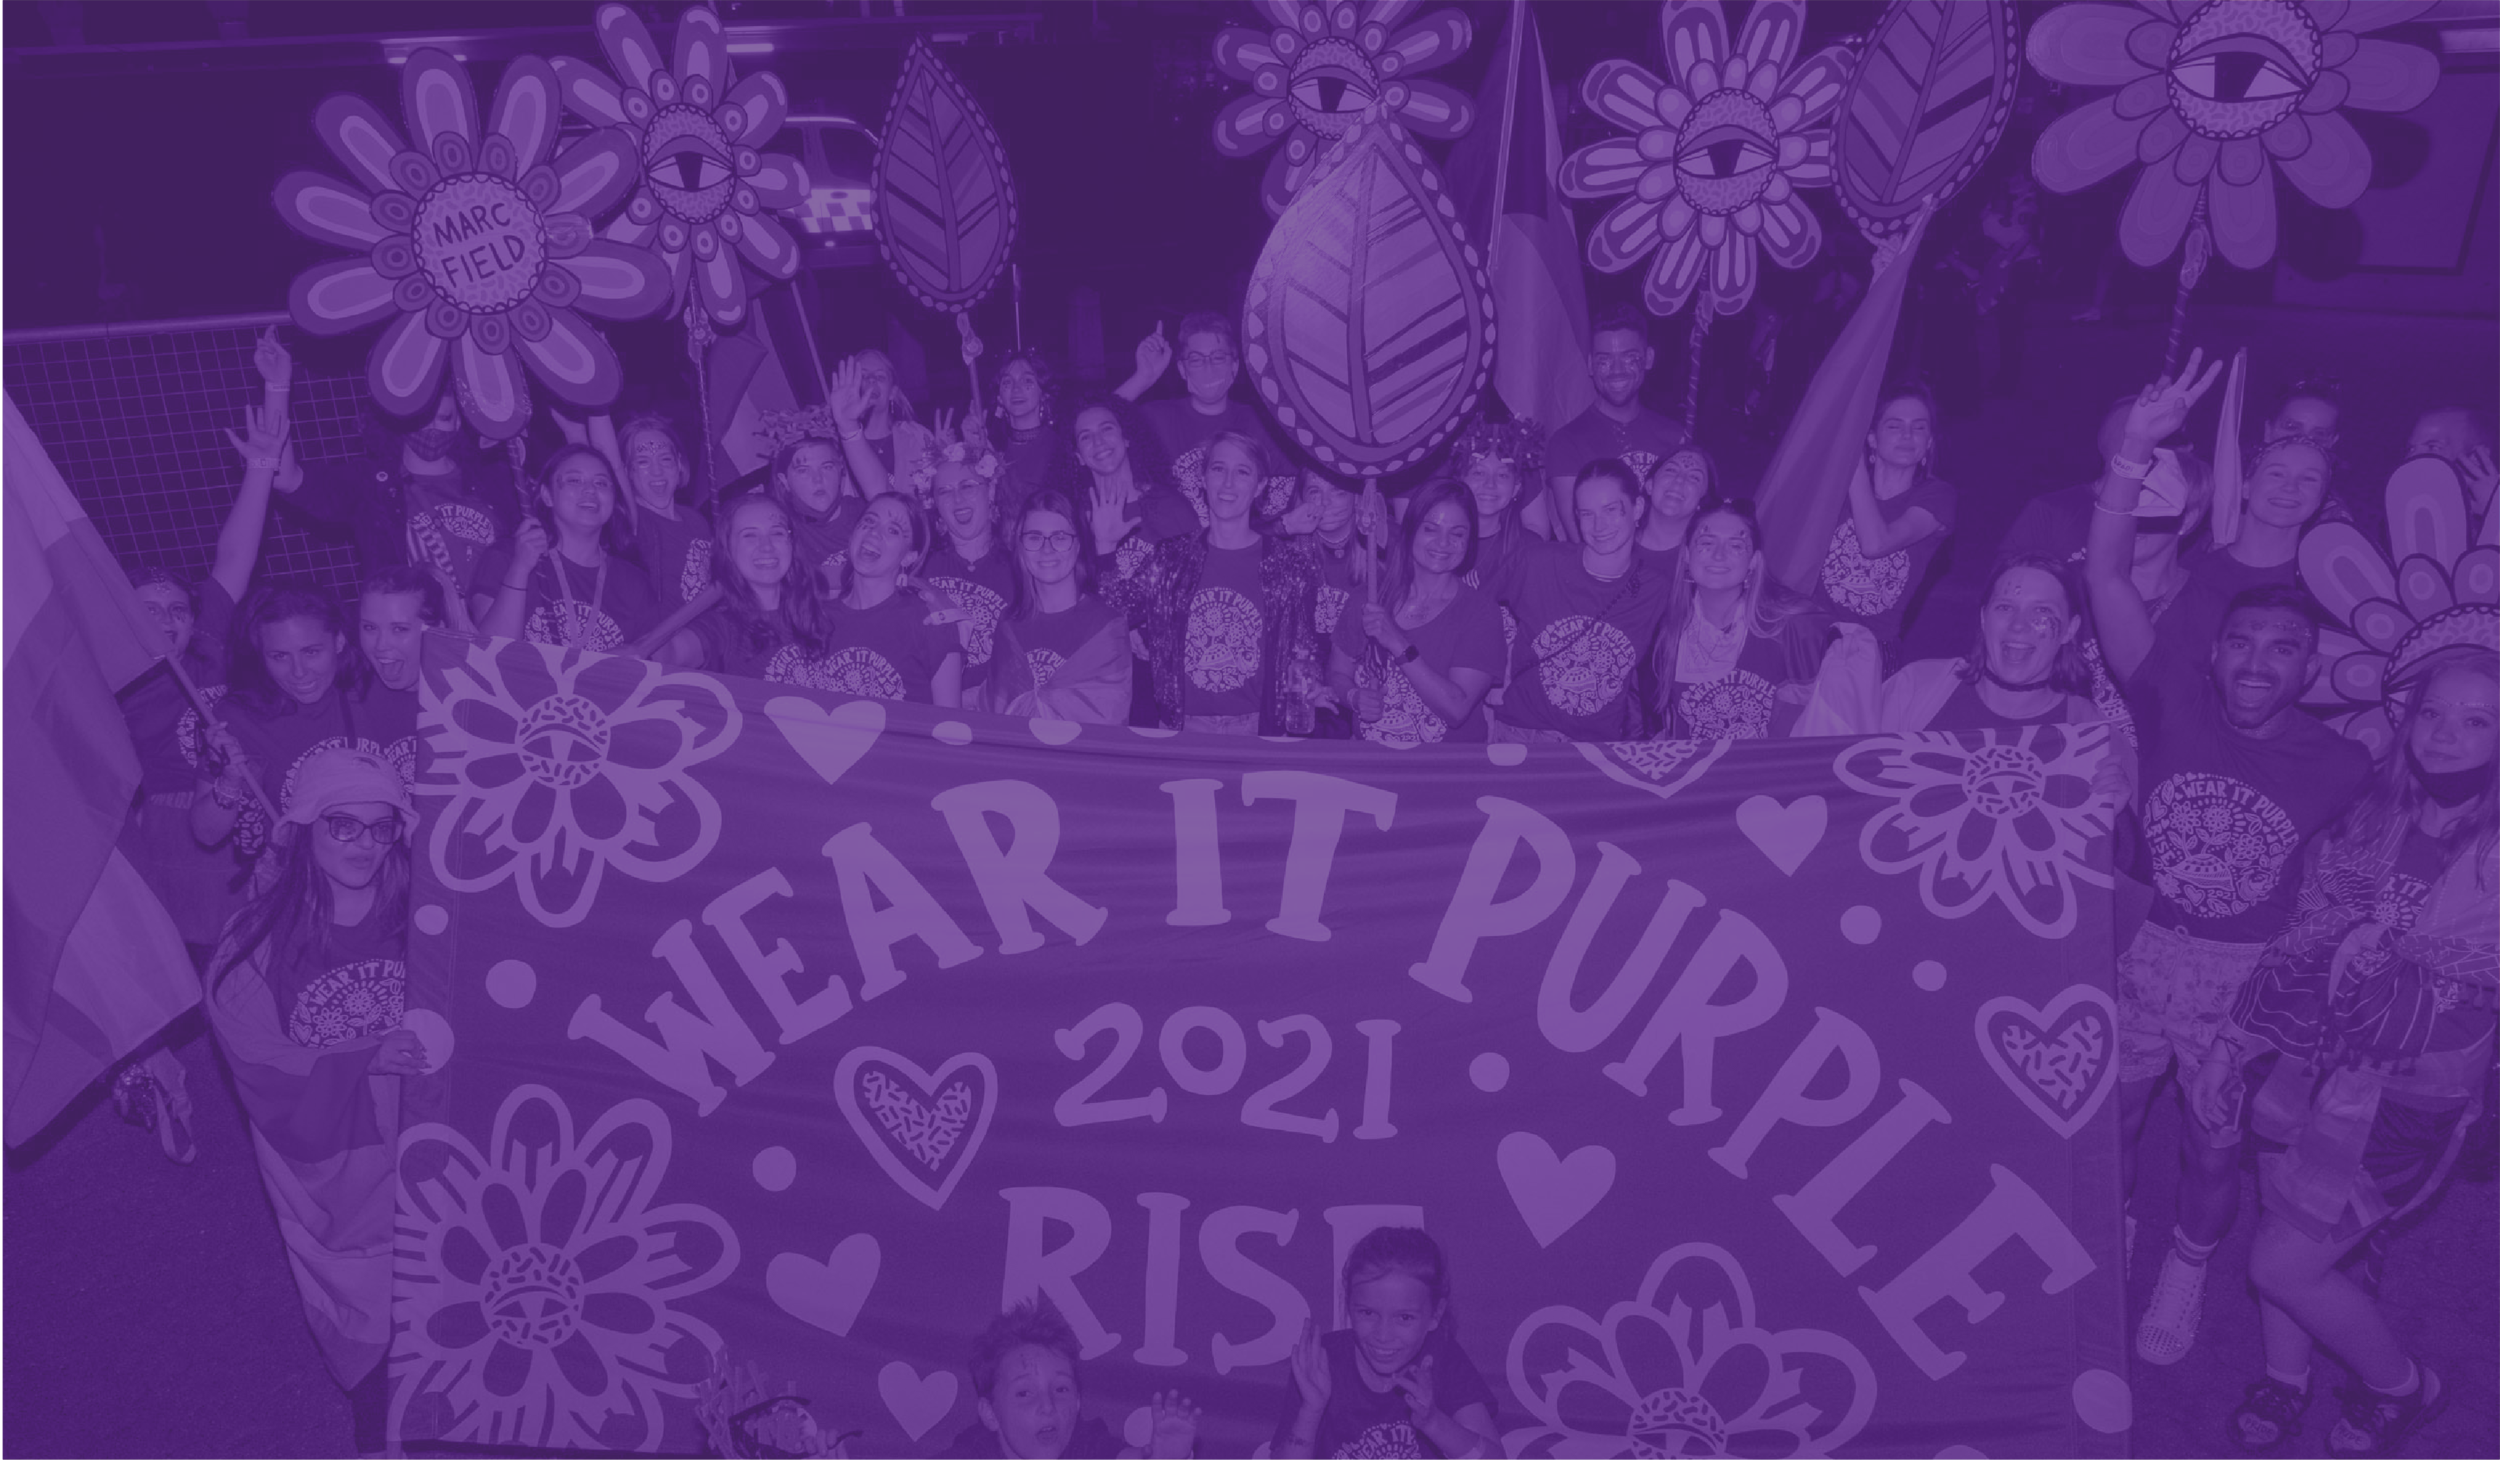 Ngày Wear it Purple quan trọng để chúng ta thể hiện sự đoàn kết và chấp nhận cho cộng đồng LGBT. Cùng nhau mặc đồng phục tím và tạo nên một không khí tràn đầy yêu thương và sự đồng cảm.